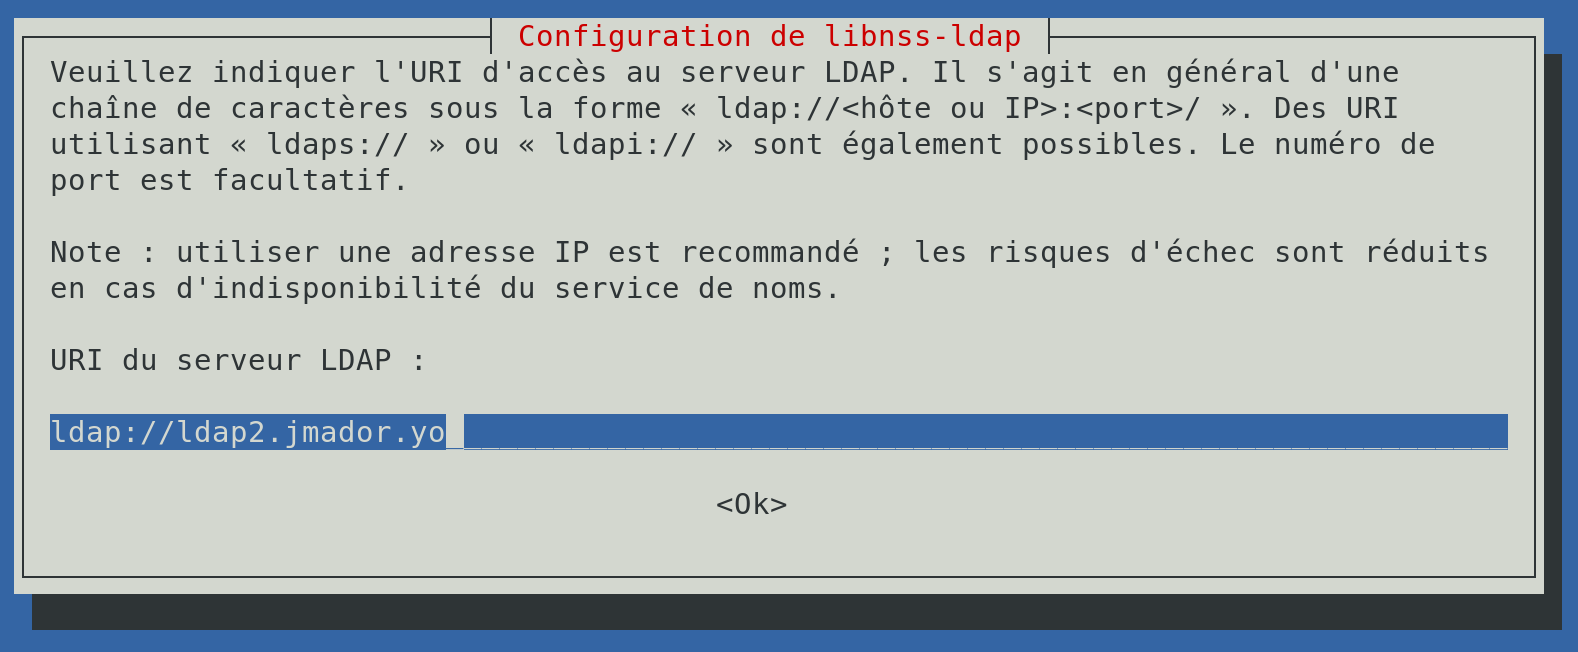 Fichier:LDAP-LIBNSSLDAP1.png